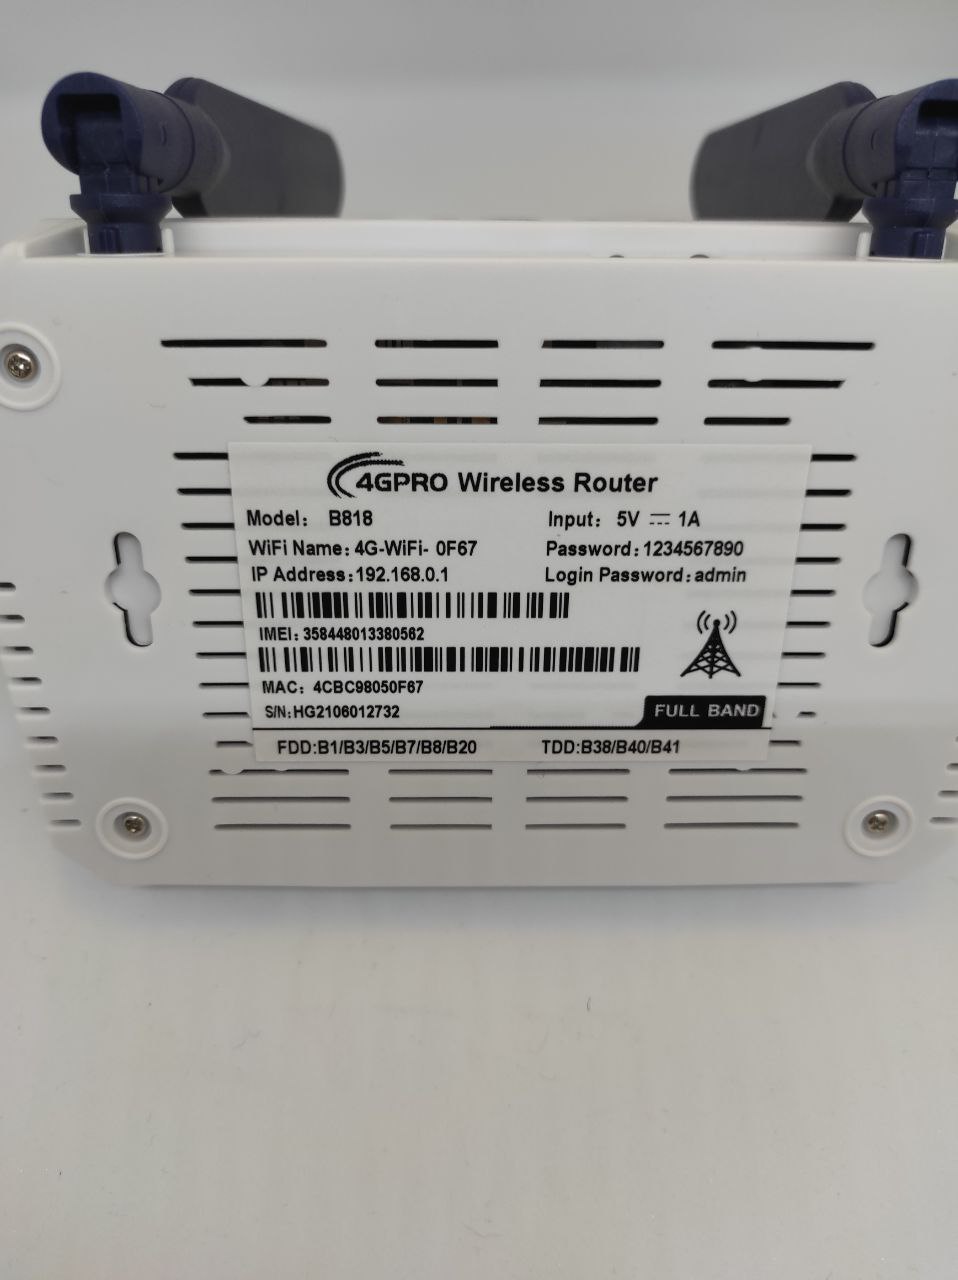 Роутер 4GPRO B818 Wireless Router, с Wi-Fi роутером работает с любой сим картой